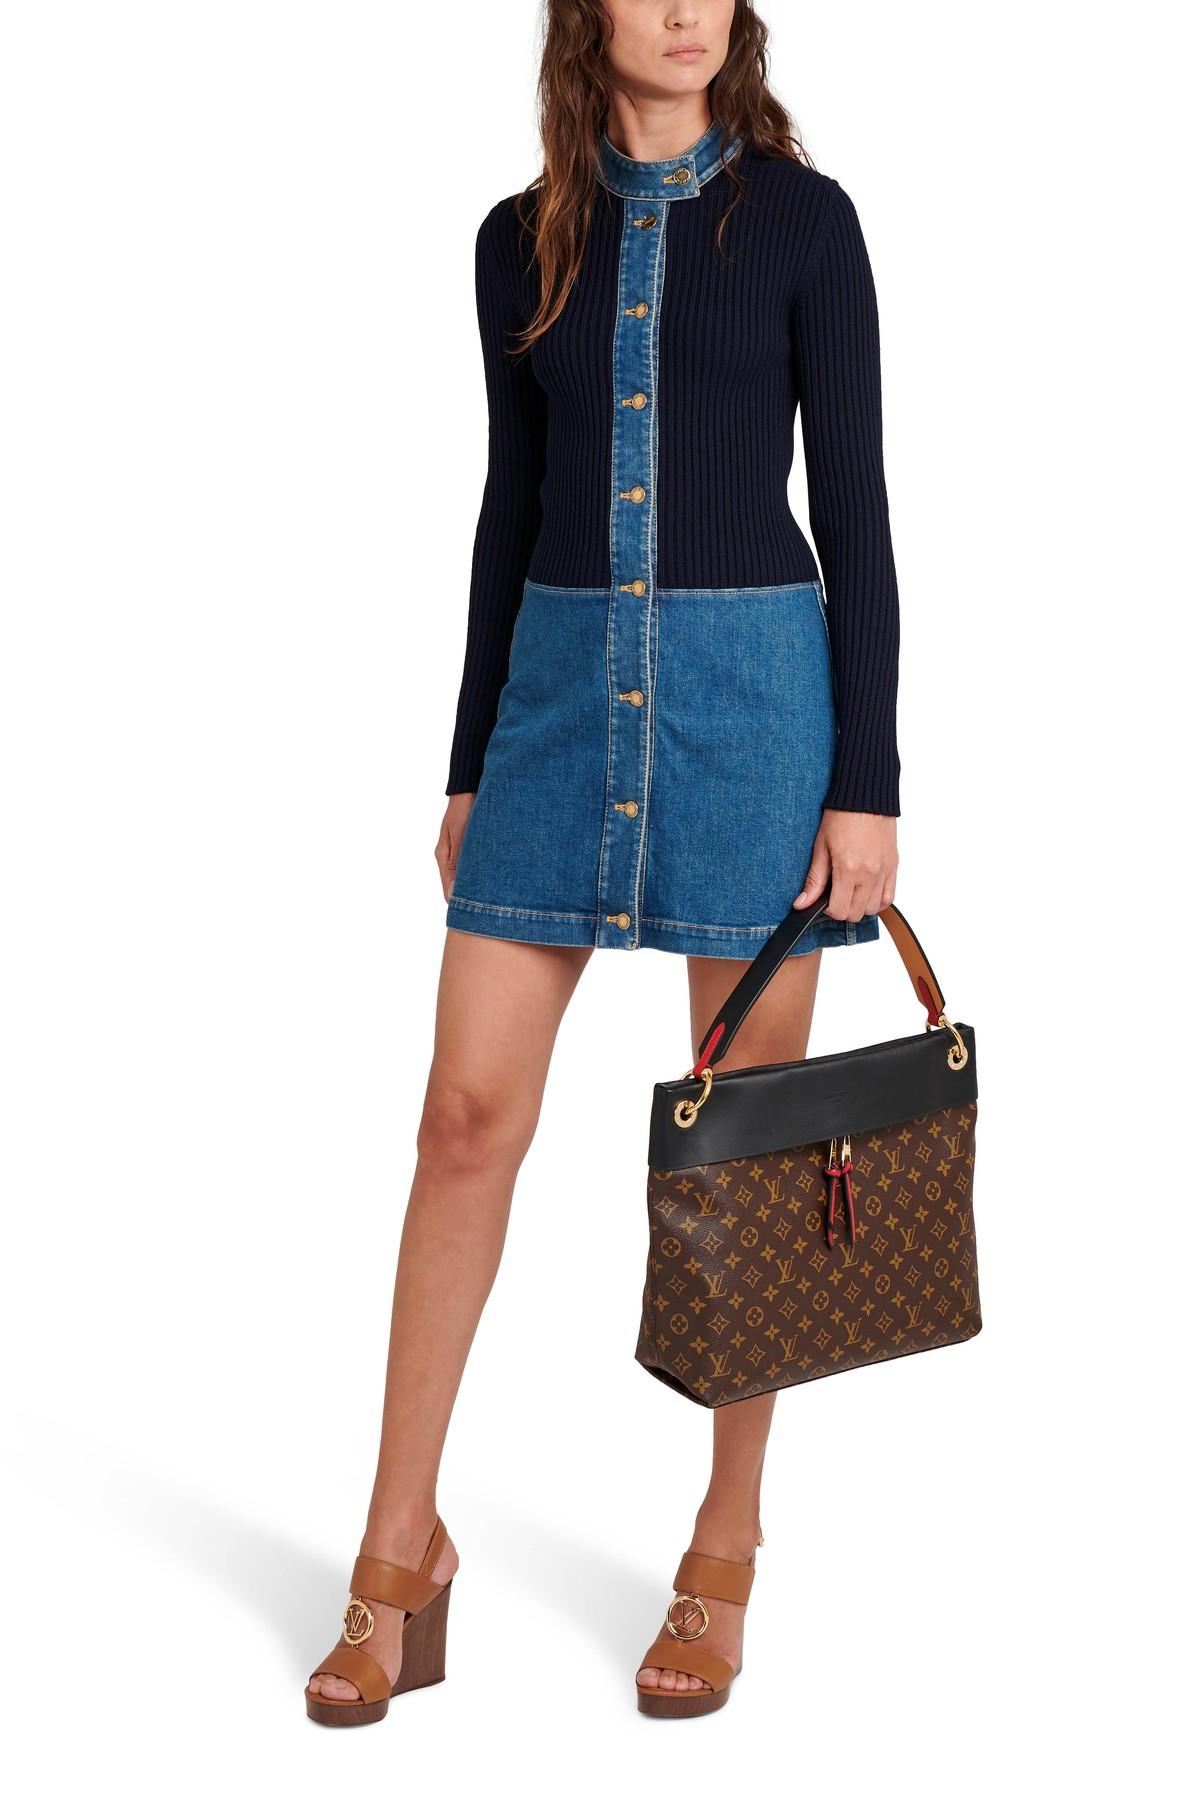 Used 2020SS Louis Vuitton Denim Dress Women XS Size Blue Denim Color Knee  Length